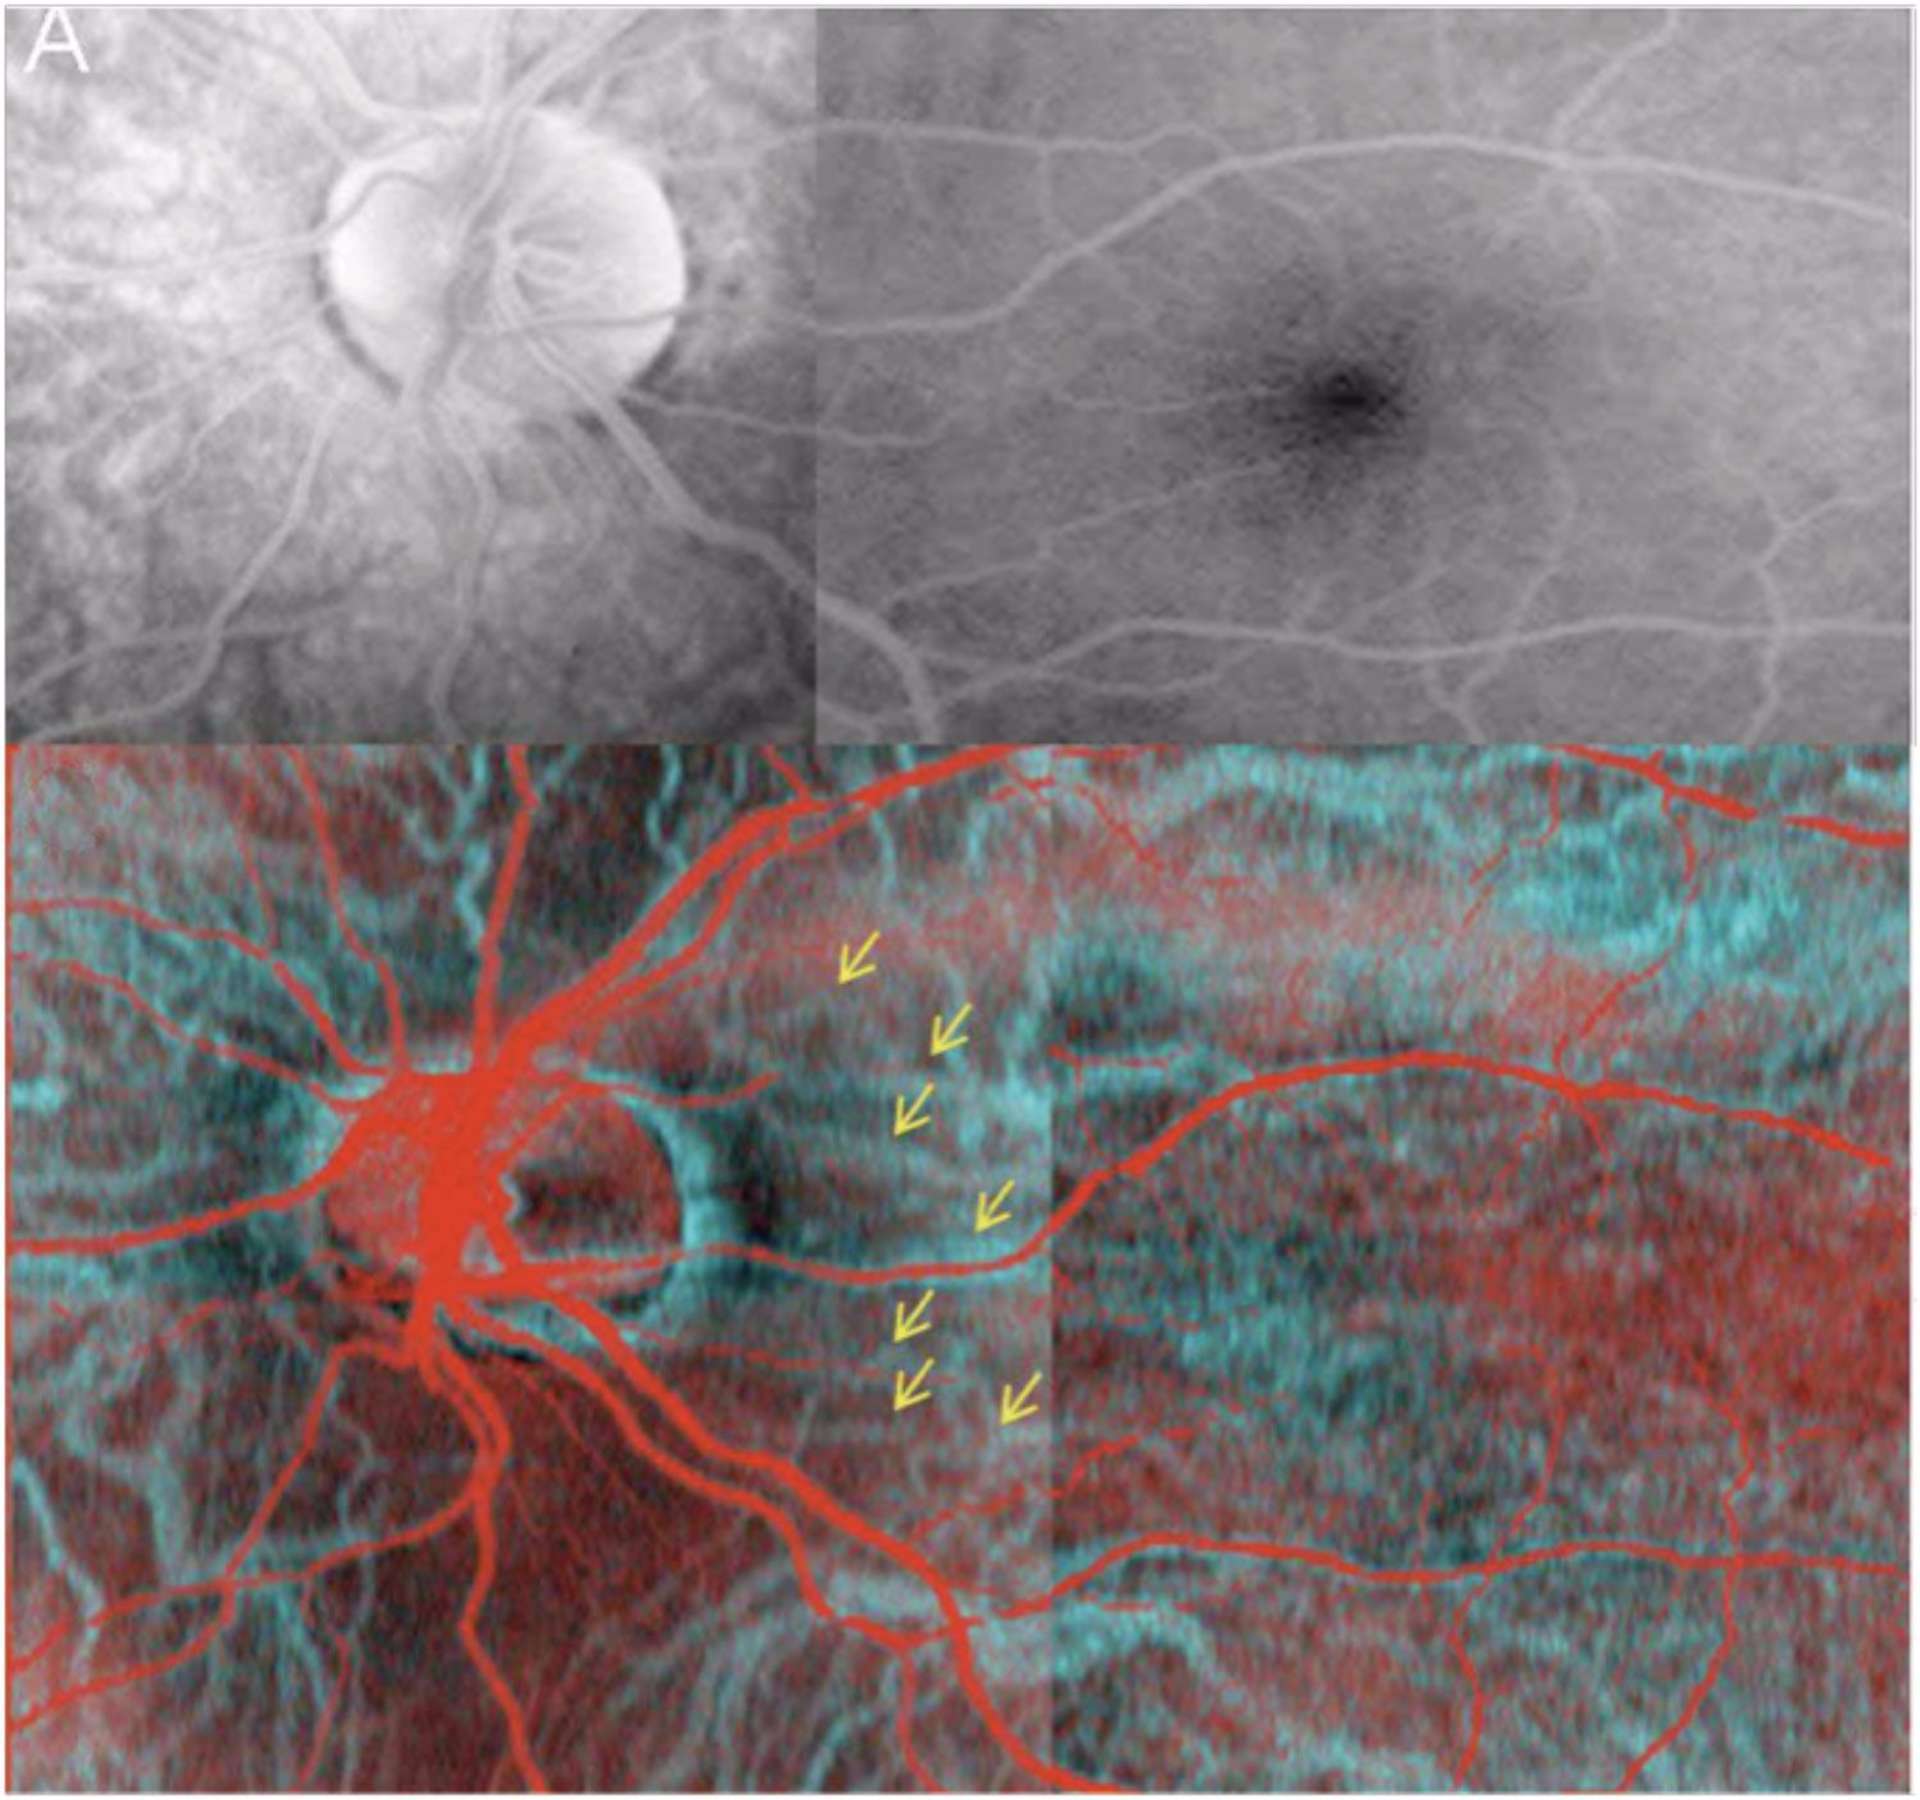 Clichés de la région papillaire et de la macula, en angiographie à la fluoroscéine (a) et en Optical Coherence Angiography
